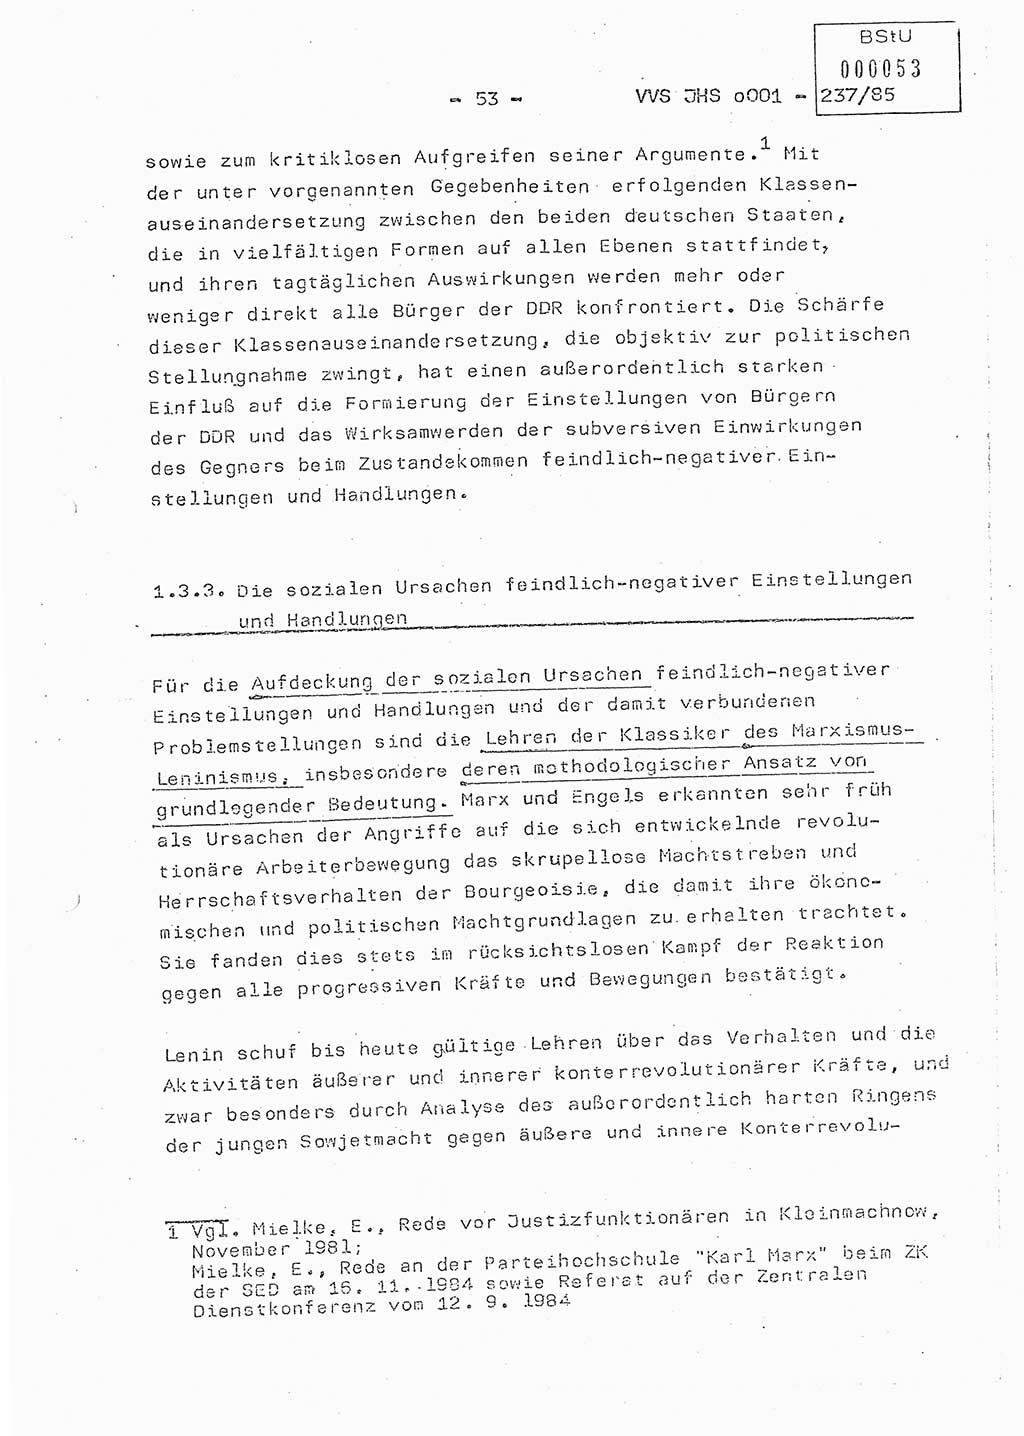 Dissertation Oberstleutnant Peter Jakulski (JHS), Oberstleutnat Christian Rudolph (HA Ⅸ), Major Horst Böttger (ZMD), Major Wolfgang Grüneberg (JHS), Major Albert Meutsch (JHS), Ministerium für Staatssicherheit (MfS) [Deutsche Demokratische Republik (DDR)], Juristische Hochschule (JHS), Vertrauliche Verschlußsache (VVS) o001-237/85, Potsdam 1985, Seite 53 (Diss. MfS DDR JHS VVS o001-237/85 1985, S. 53)